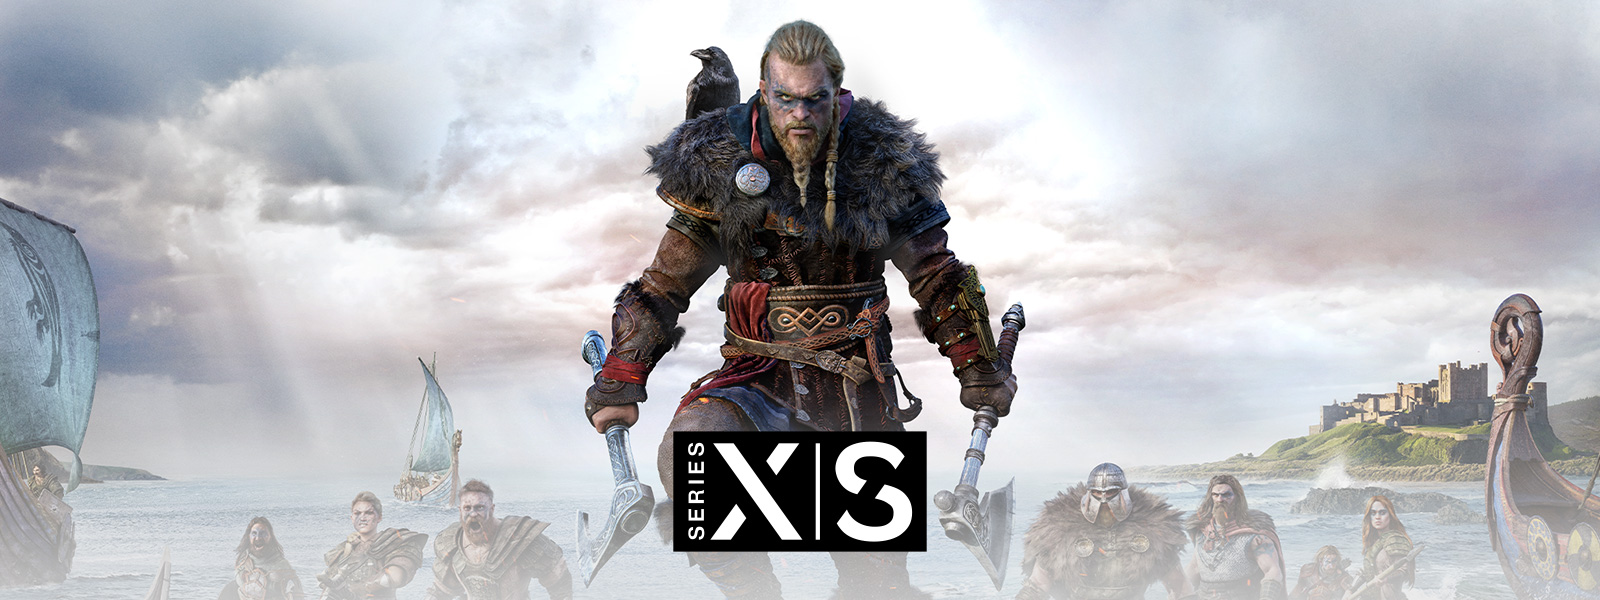 Assassin’s Creed Valhalla, Xbox Series X|S, O Lendário Viking Eivor conduz o seu exército para a batalha.